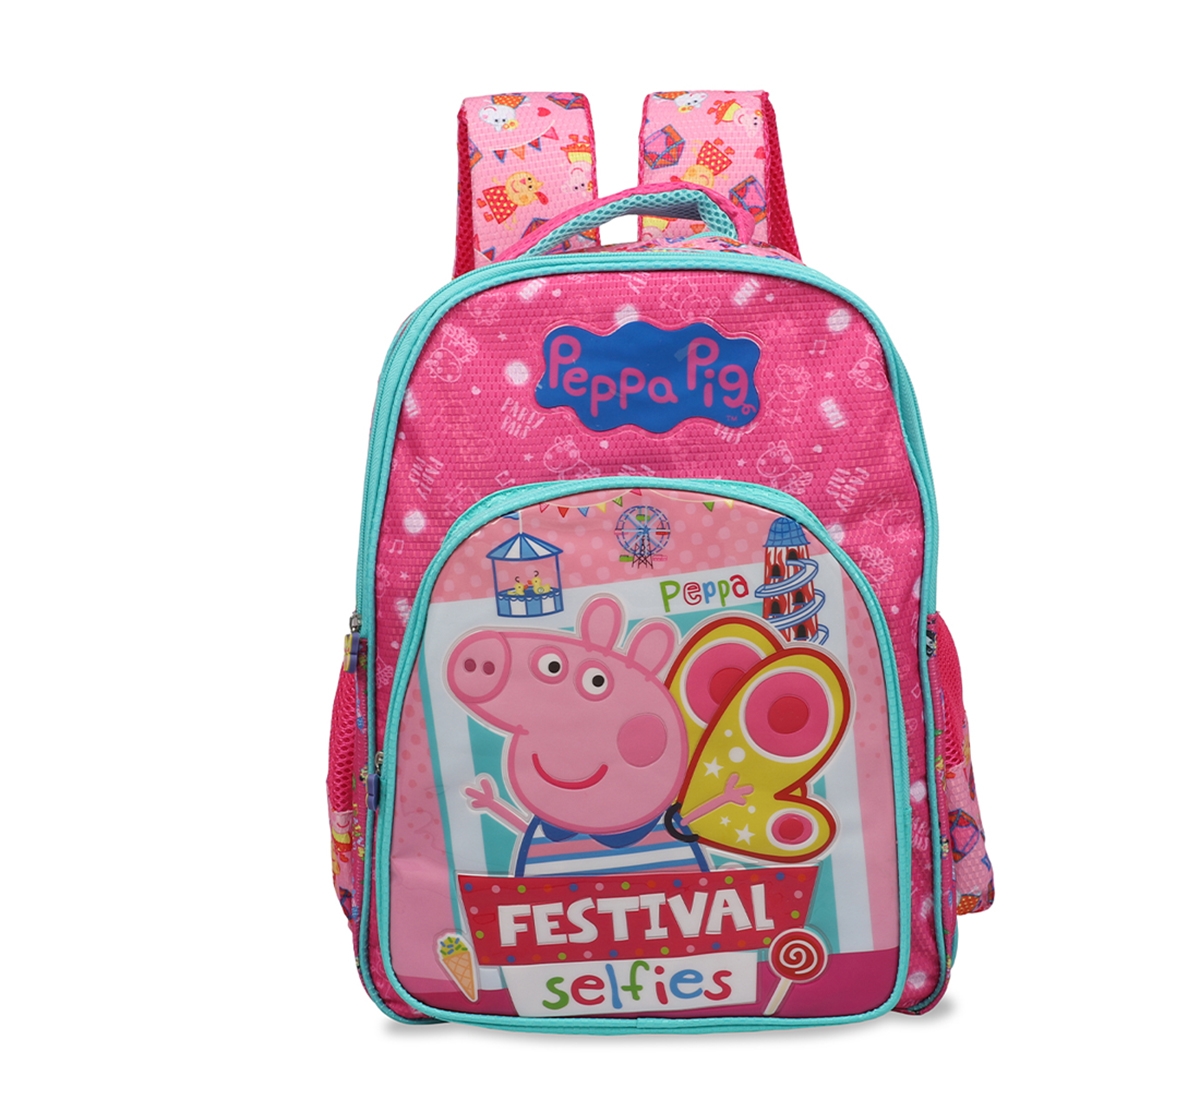 Peppa Pig | Peppa Pig Festival Selfies School Bag 36 Cm for Kids age 3Y+ (Pink) 0